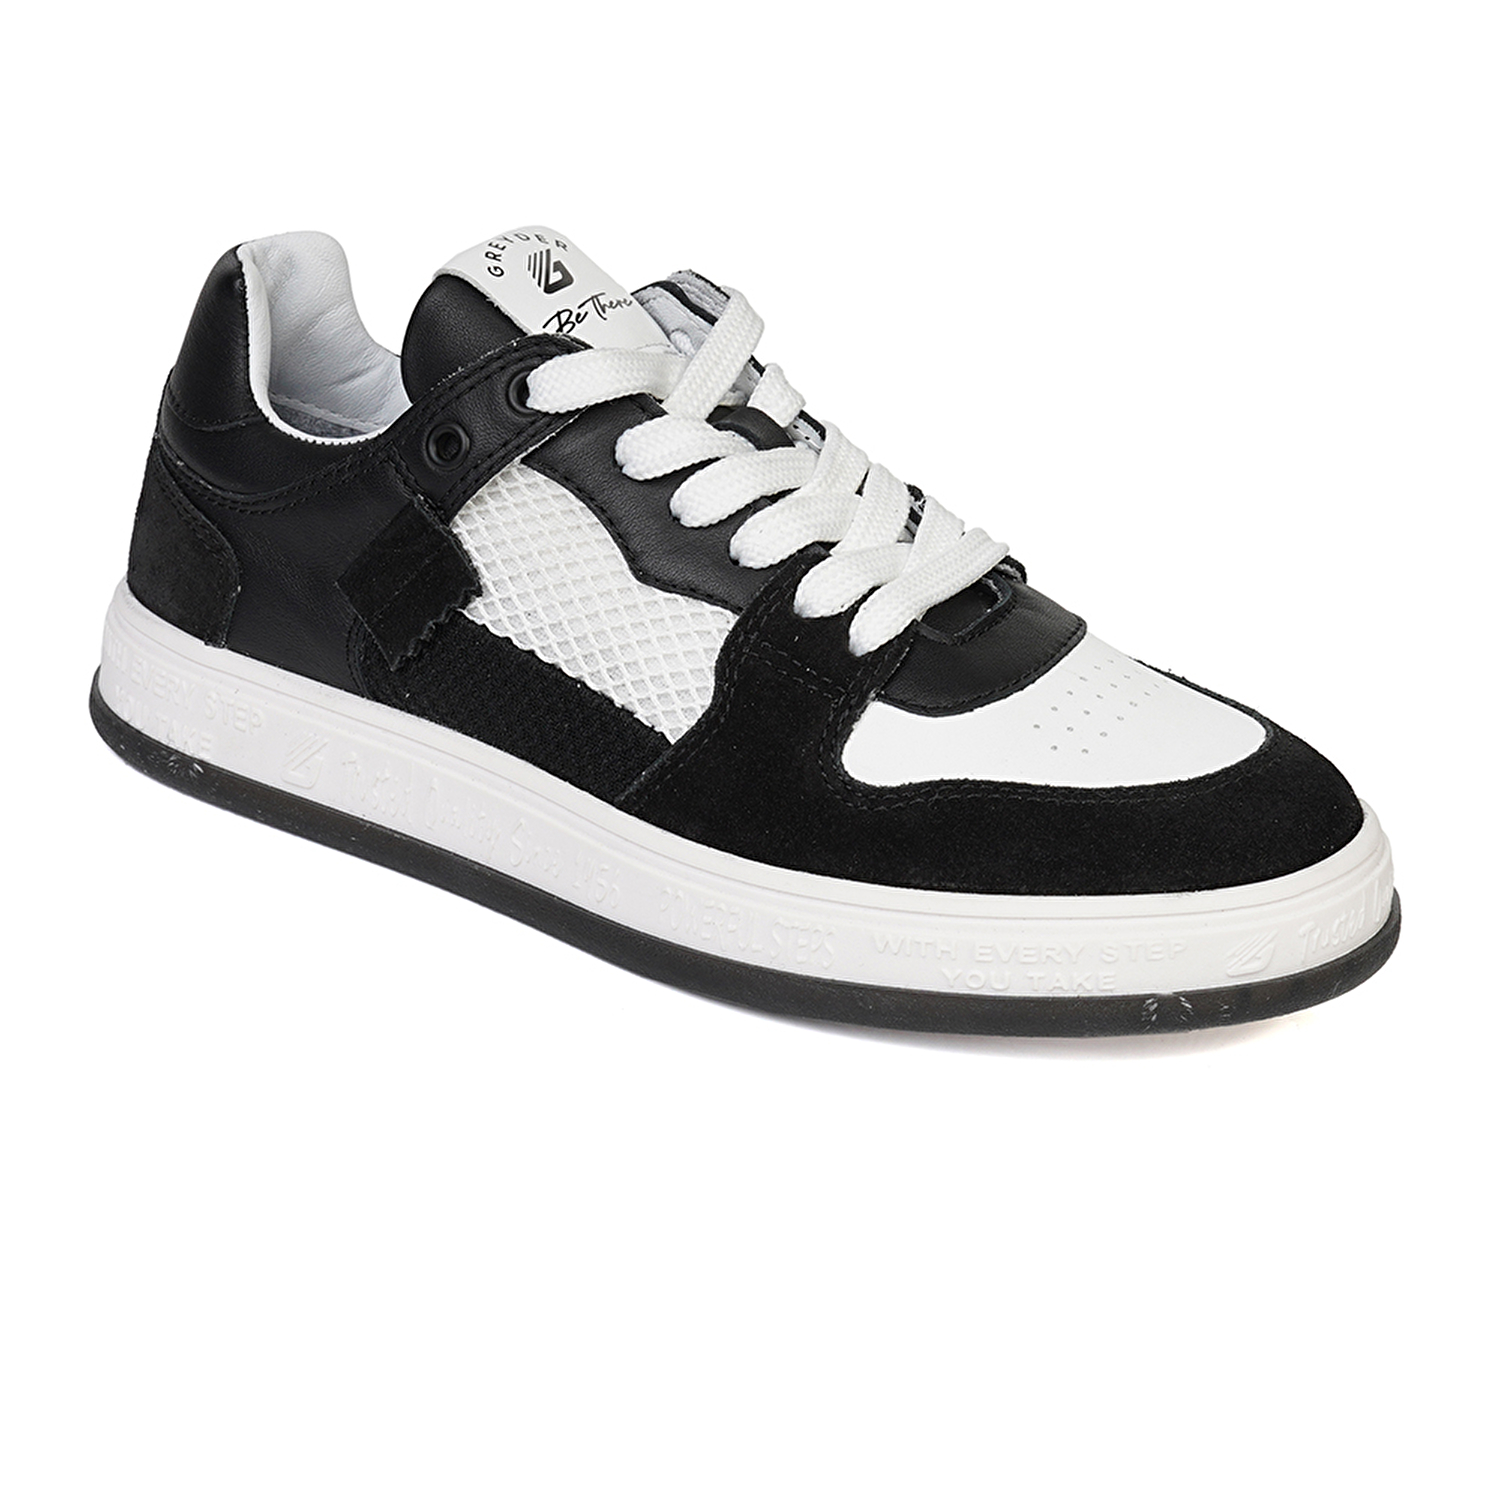 Kadın Siyah Beyaz Hakiki Deri Sneaker Ayakkabı 4Y2SA33290-1